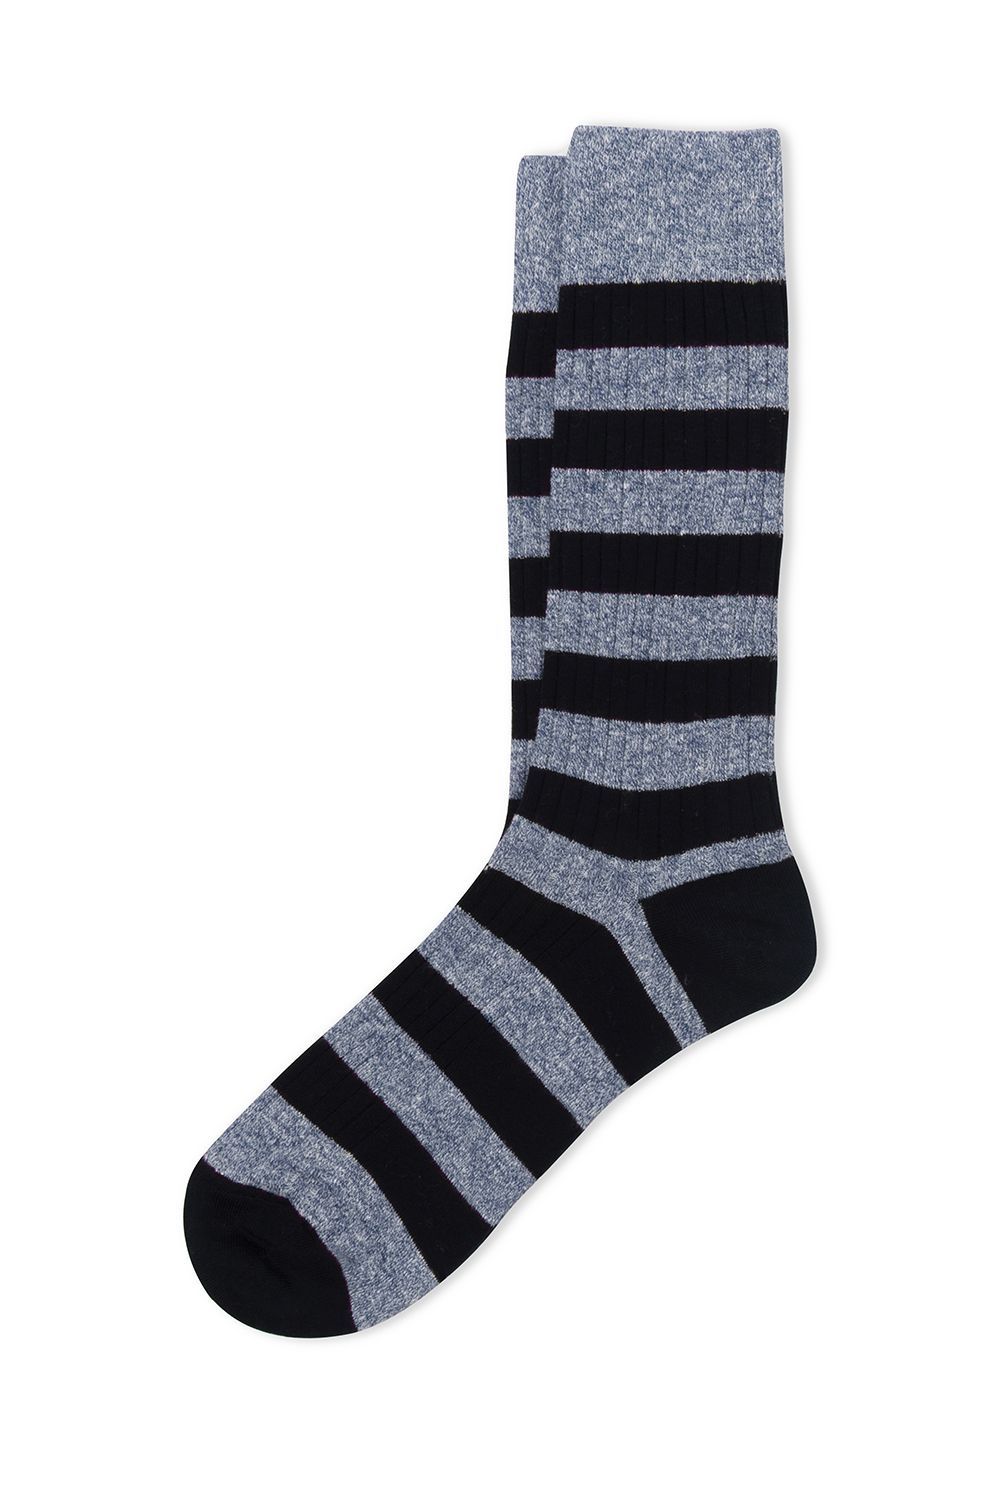 Skye Linen Socks - Short socks in blue cotton and linen